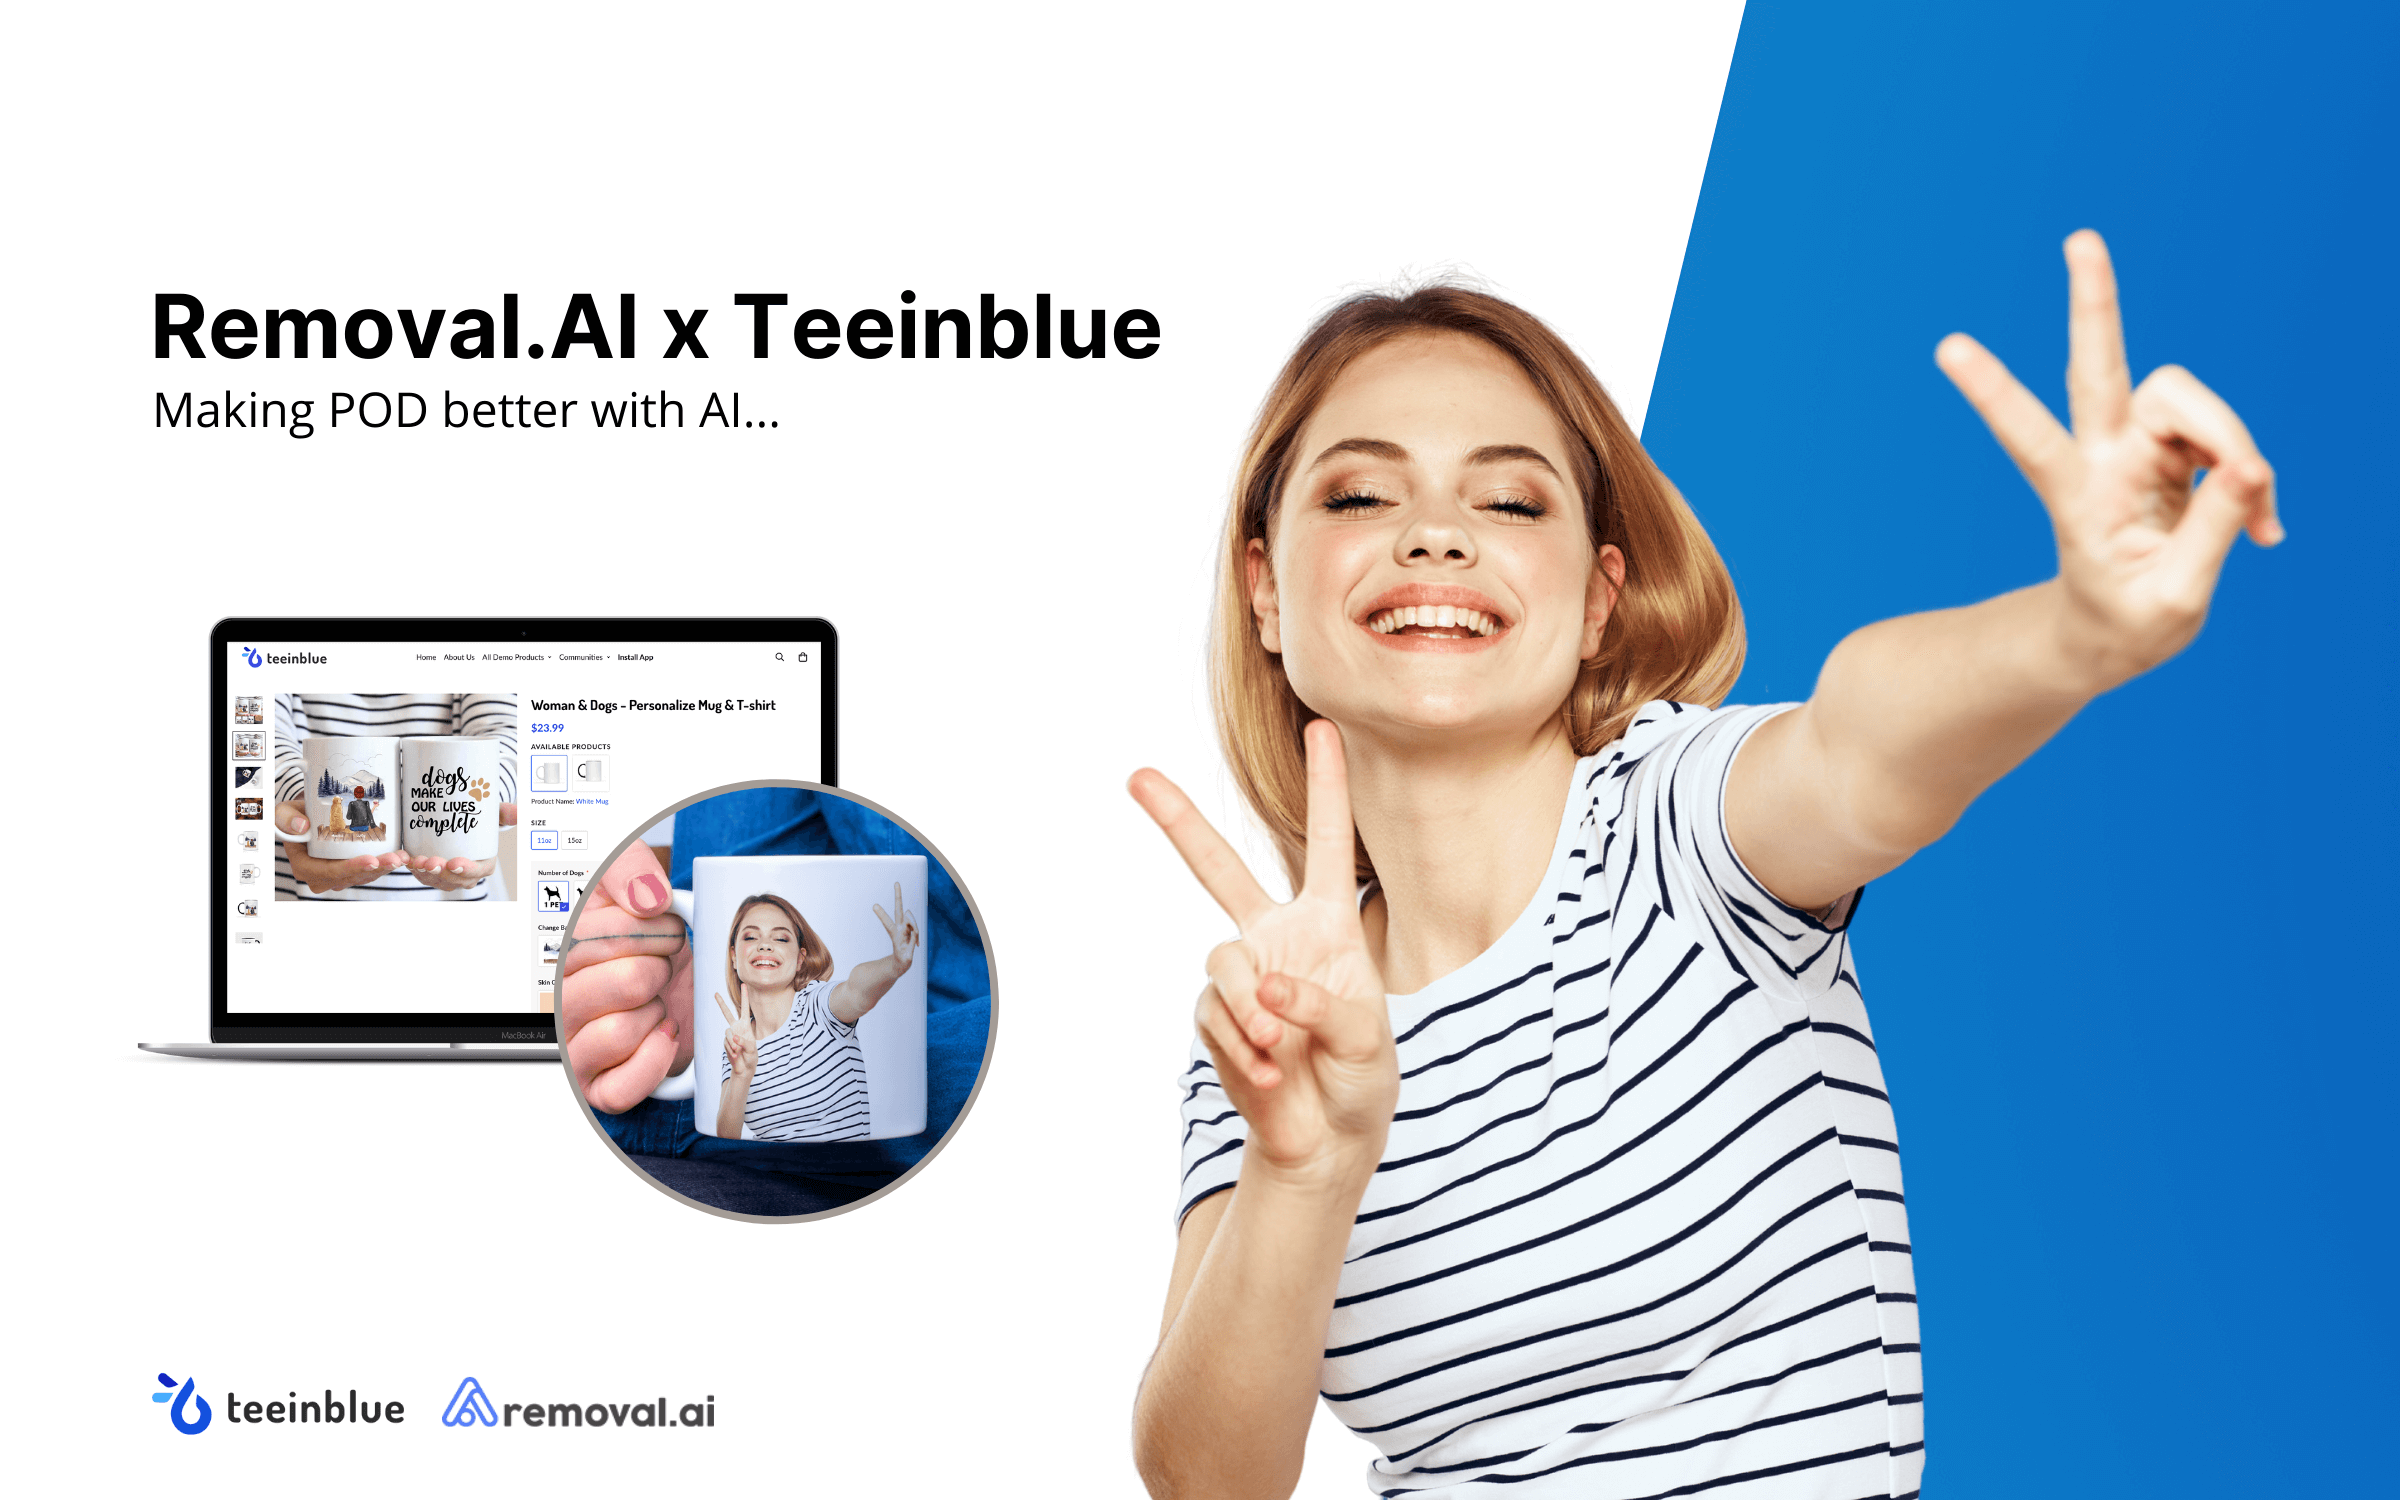 Teeinblue đã hợp tác với Removal.AI để mang đến cho người dùng khả năng loại bỏ nền ảnh và chỉnh sửa ảnh bằng trí thông minh nhân tạo một cách nhanh chóng và dễ dàng. Xem hình ảnh liên quan để hiểu thêm về khả năng của họ trong việc cải thiện ảnh của bạn.